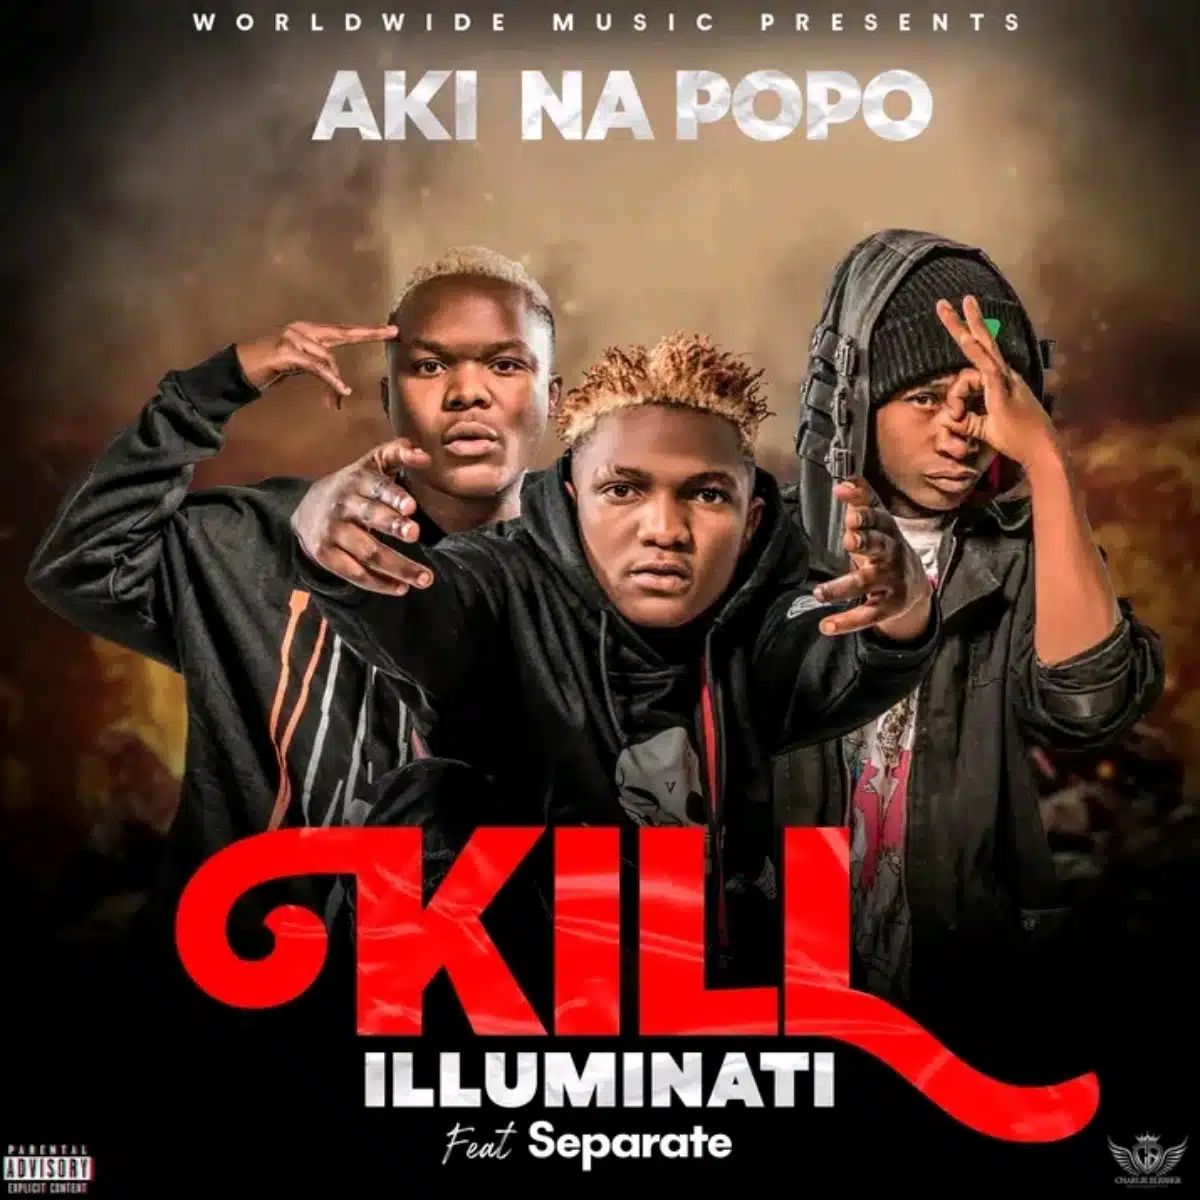 DOWNLOAD: Aki Na Popo Ft Separate – “Kill illuminati” Mp3